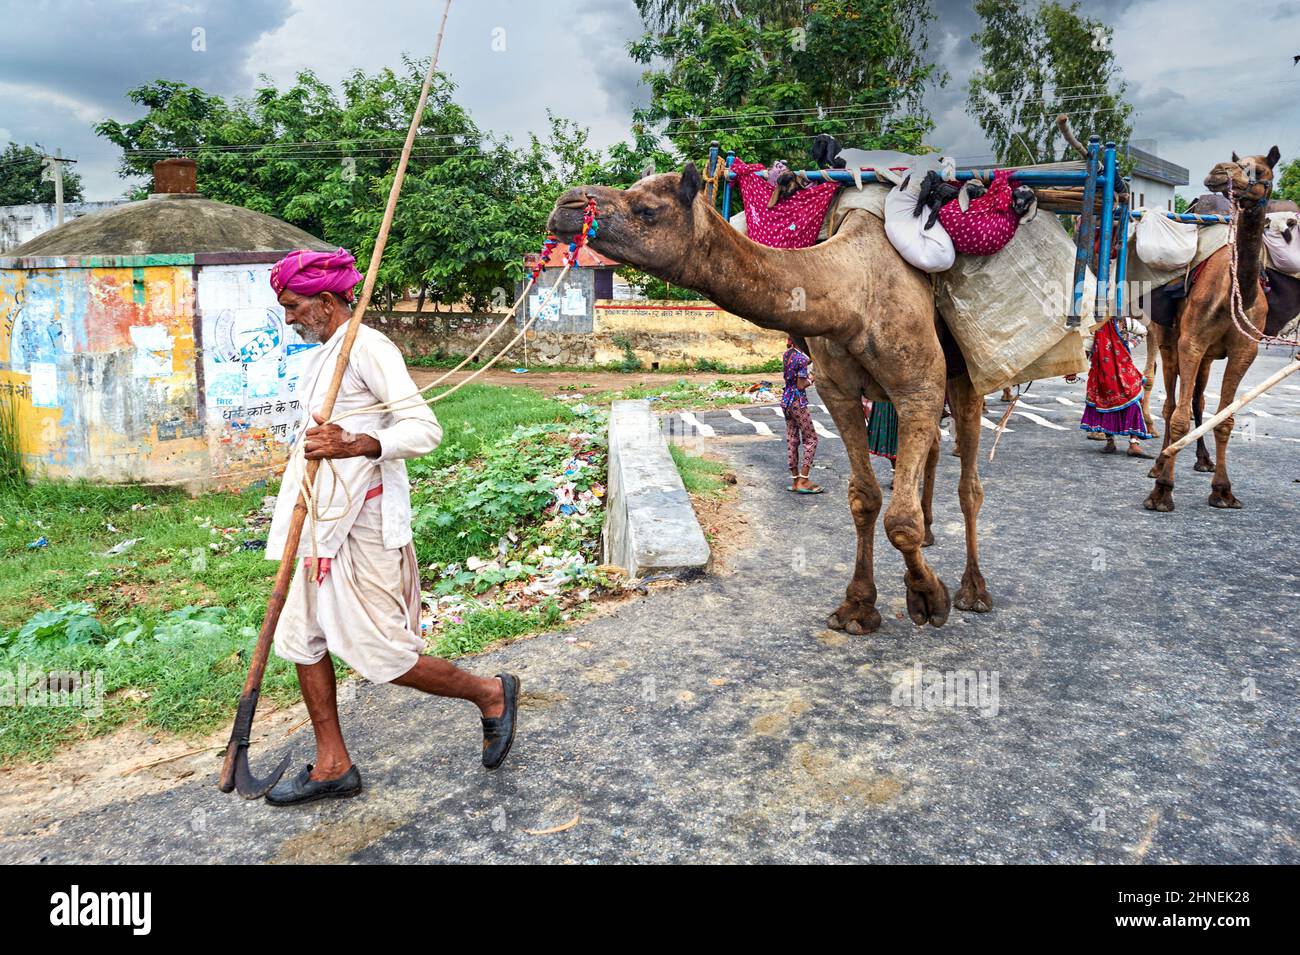 Inde Rajasthan. Retour au village avec des chameaux Banque D'Images